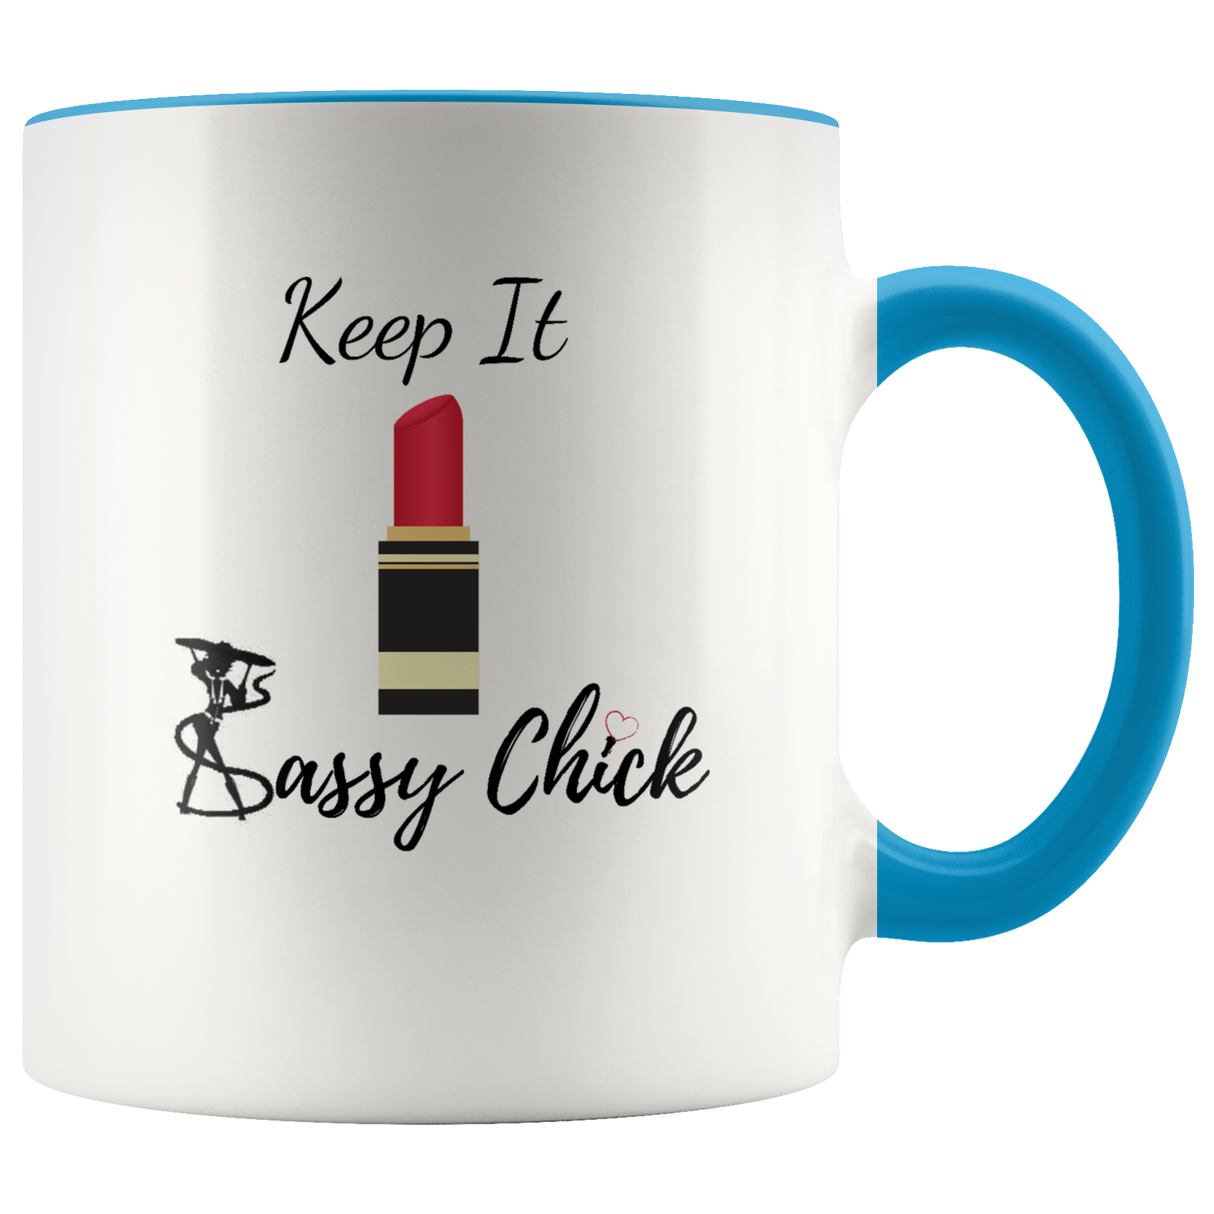 Mug Red Lipstick Ceramic Accent Mug - Blue | Shop Sassy Chick